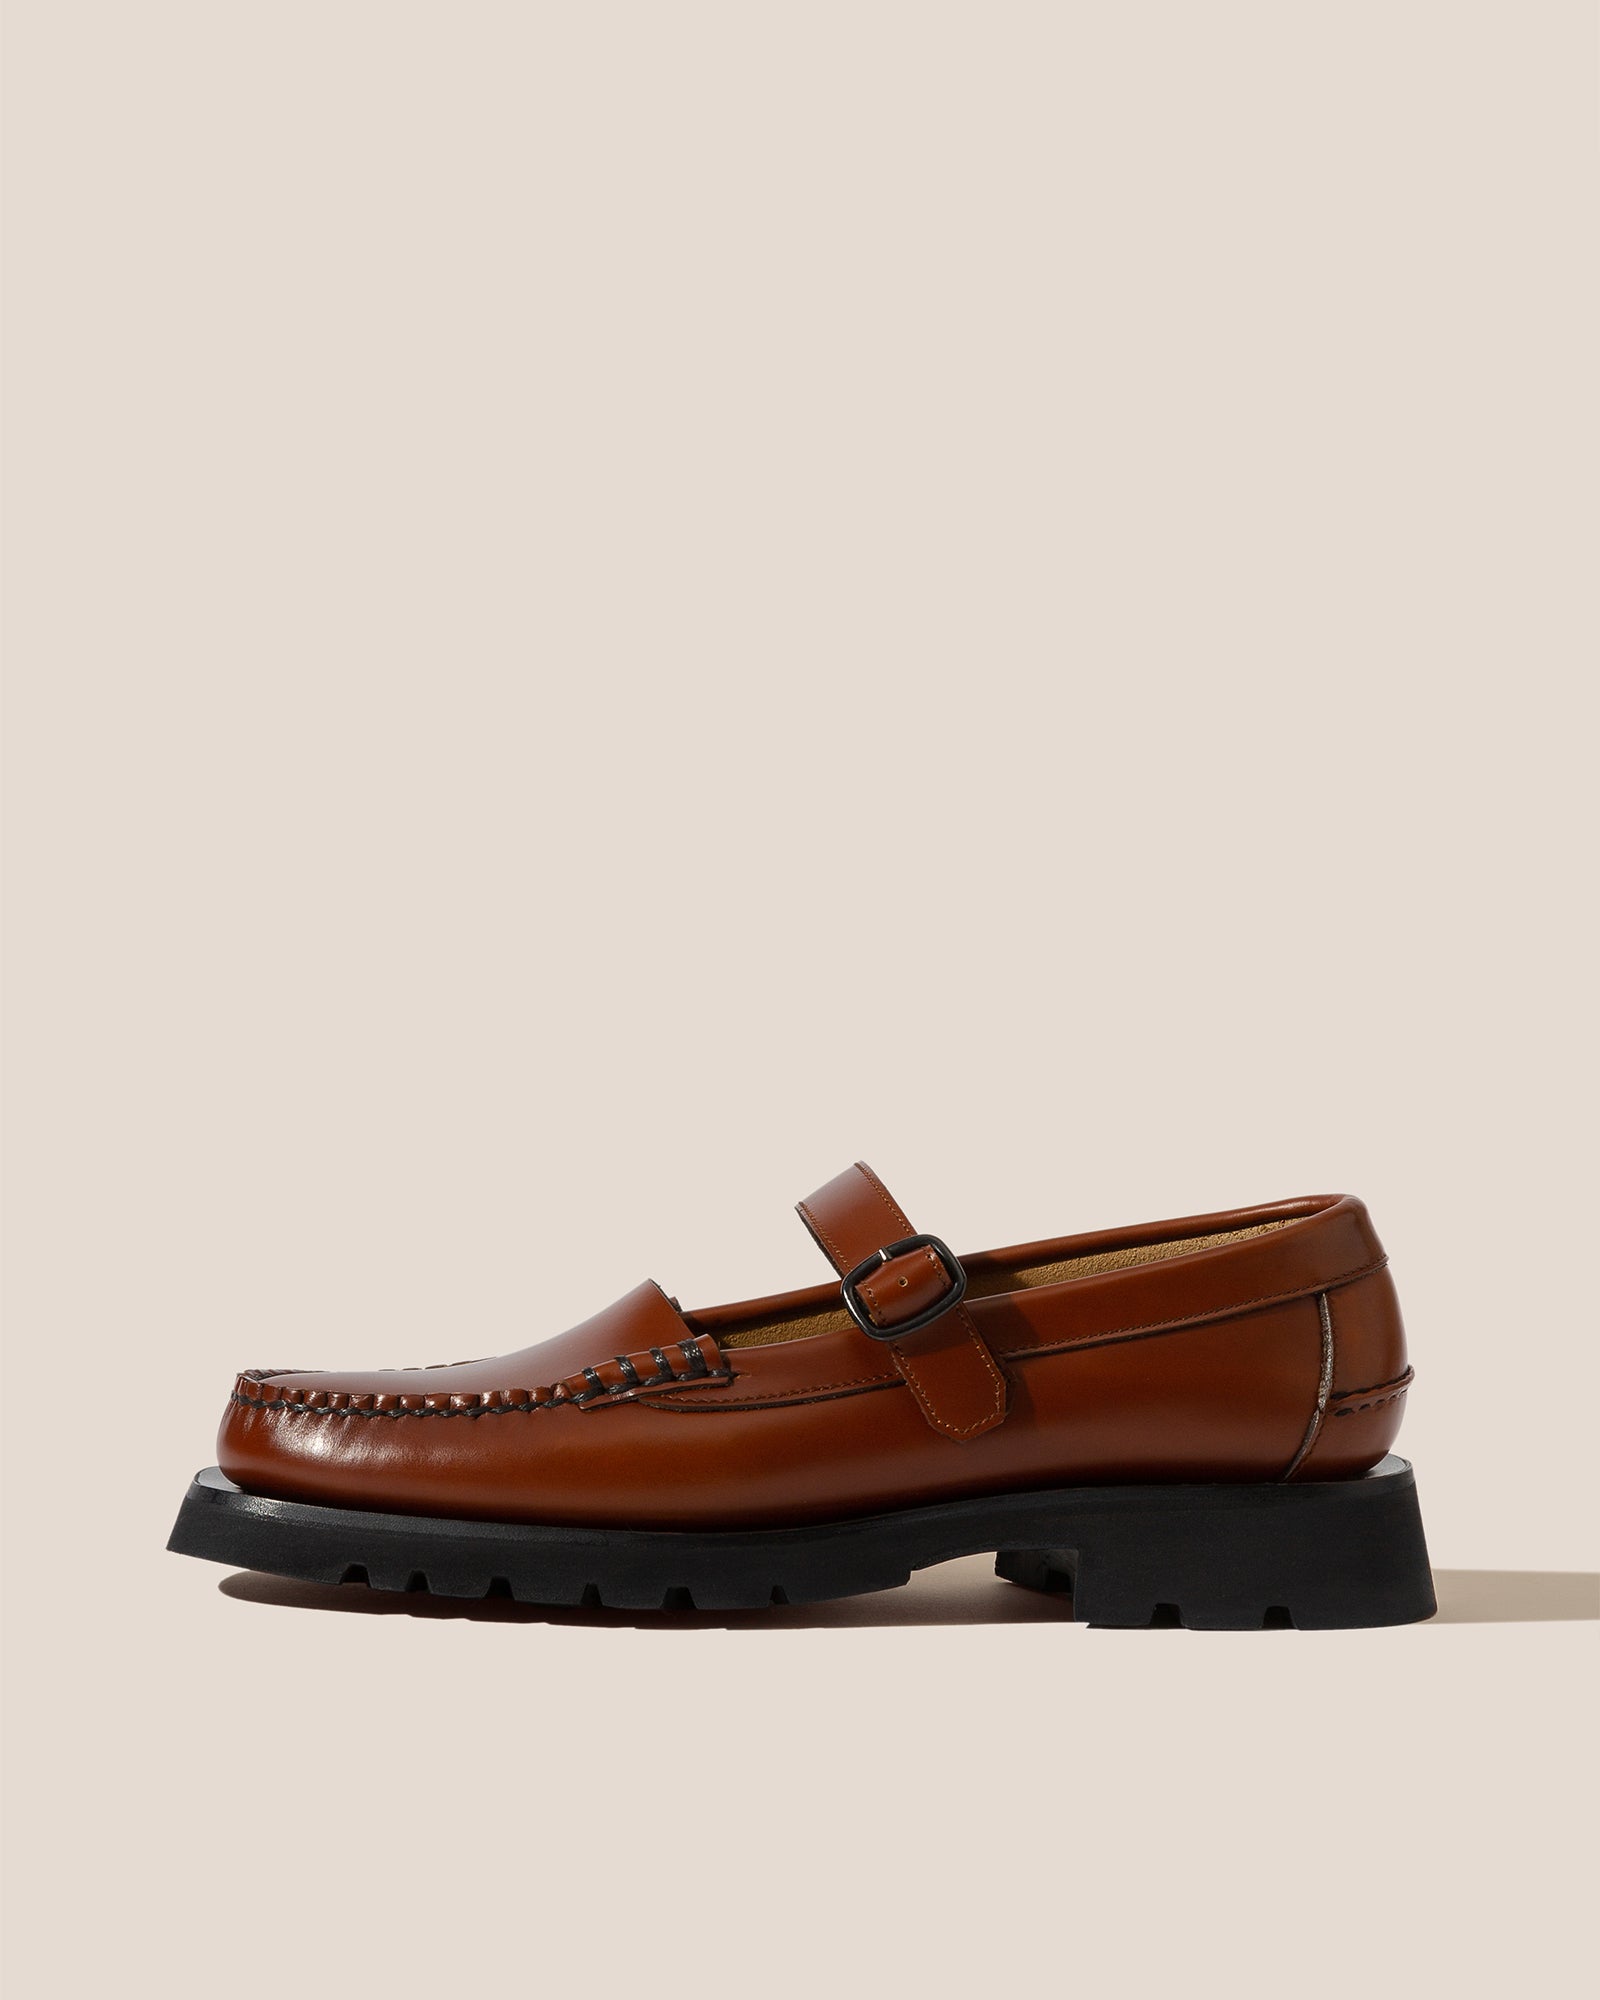 Louis Vuitton Men's Black Shoes Sz. 7.5